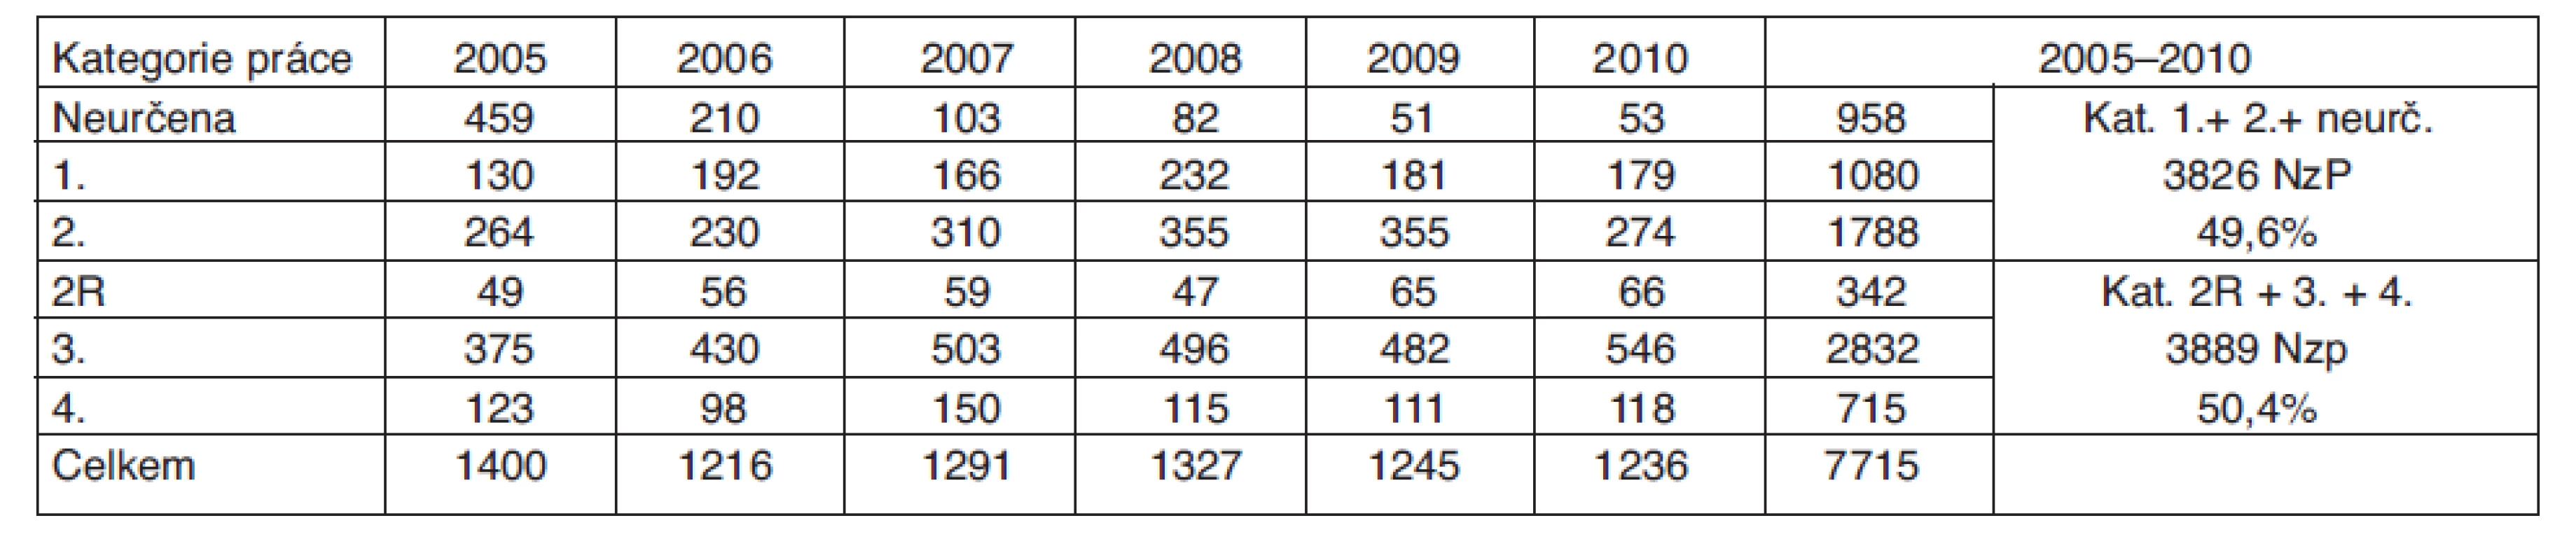 Celkový počet uznaných nemocí z povolání podle kategorie práce v ČR (2005–2010)